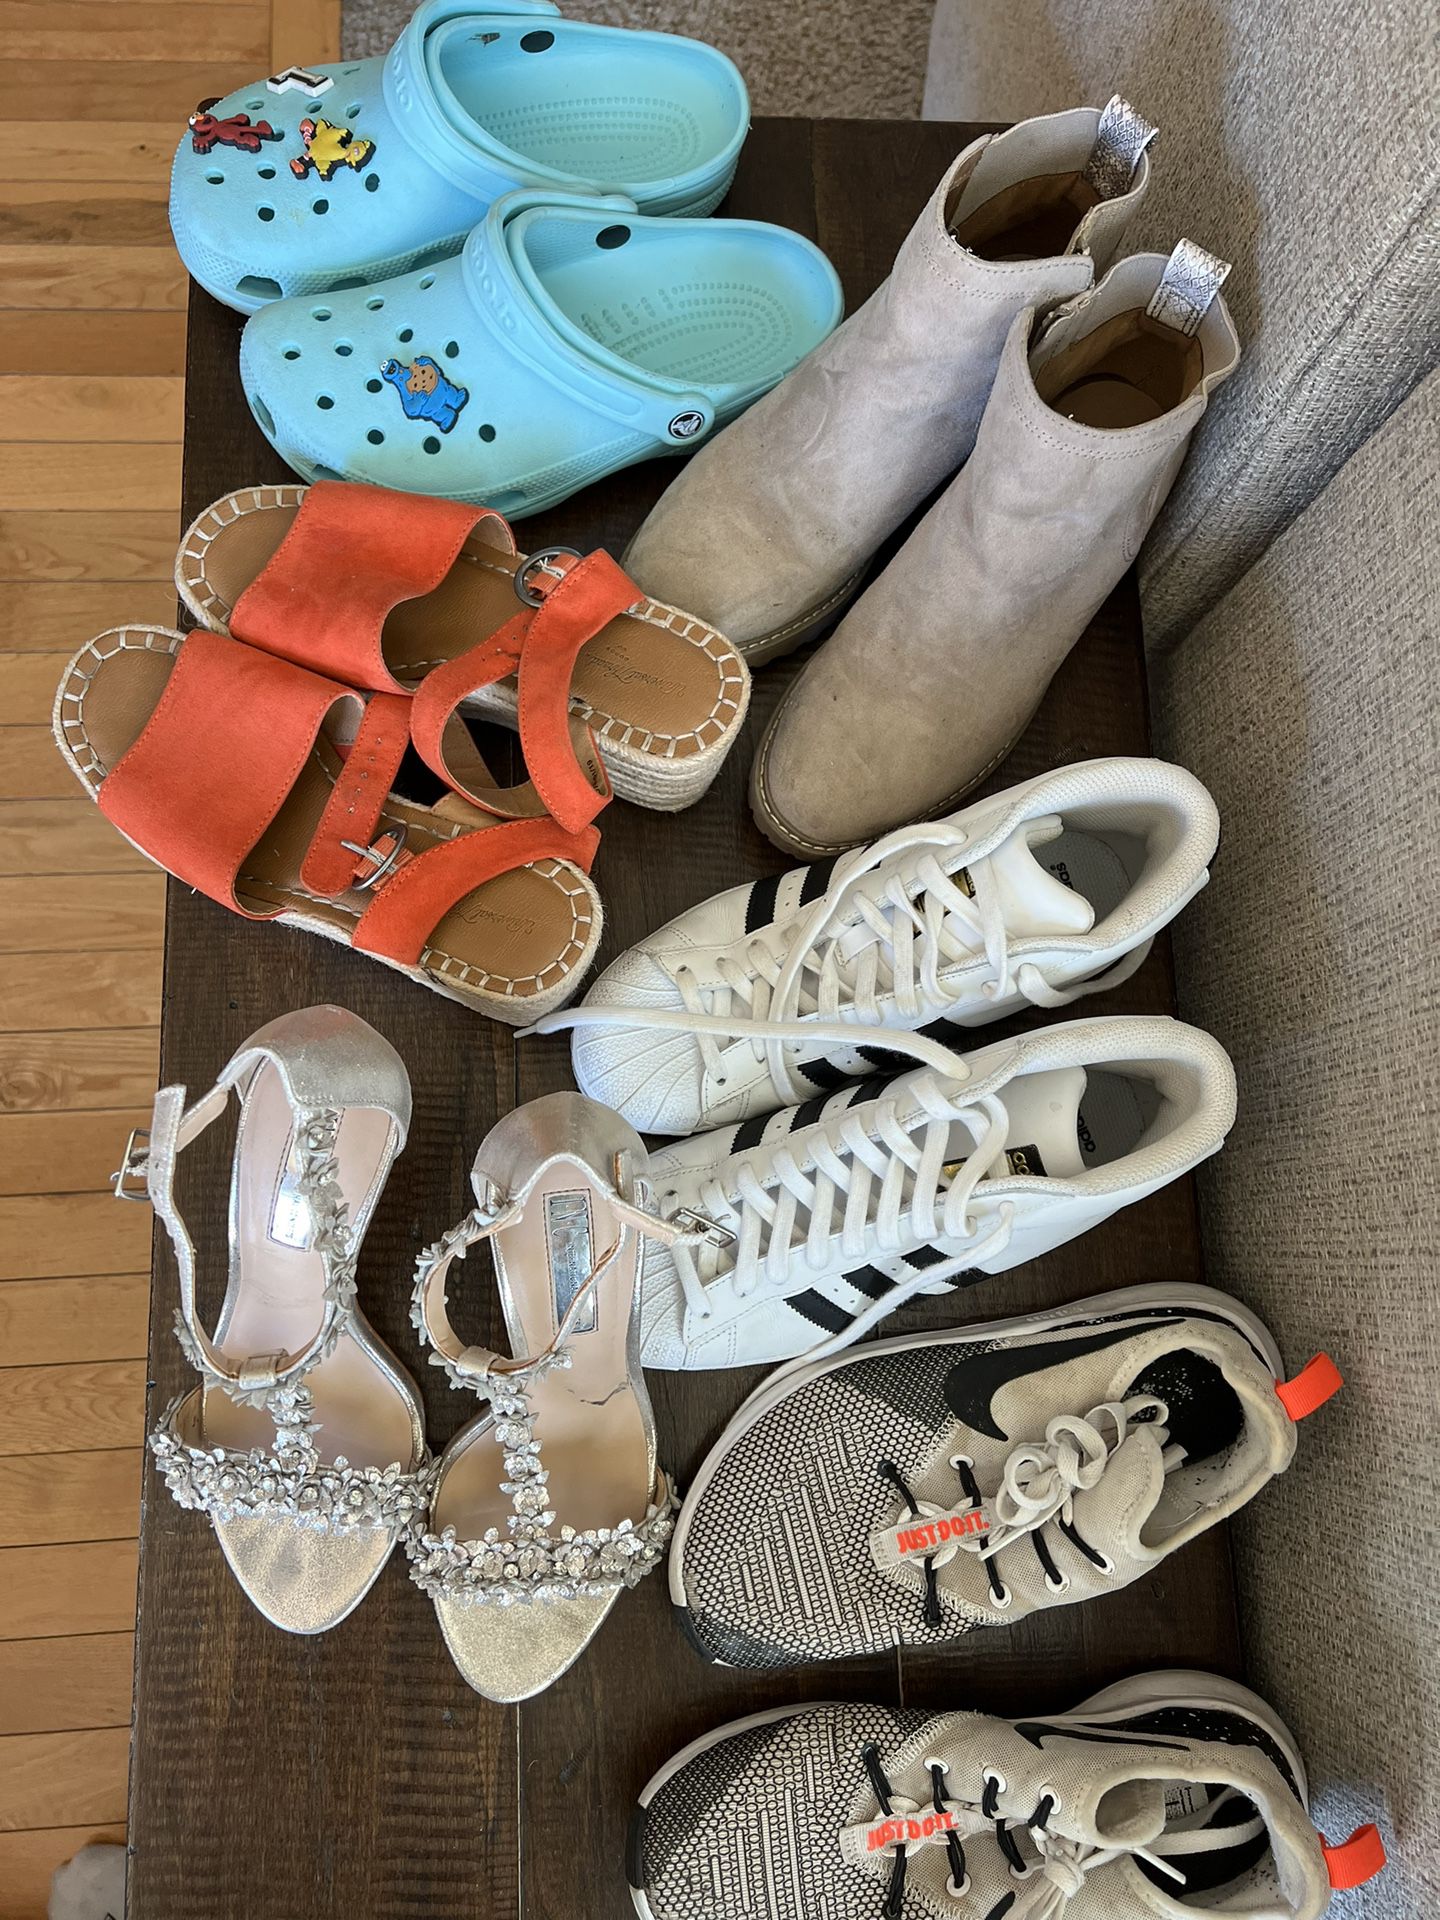 Women’s Shoes Cleanout 